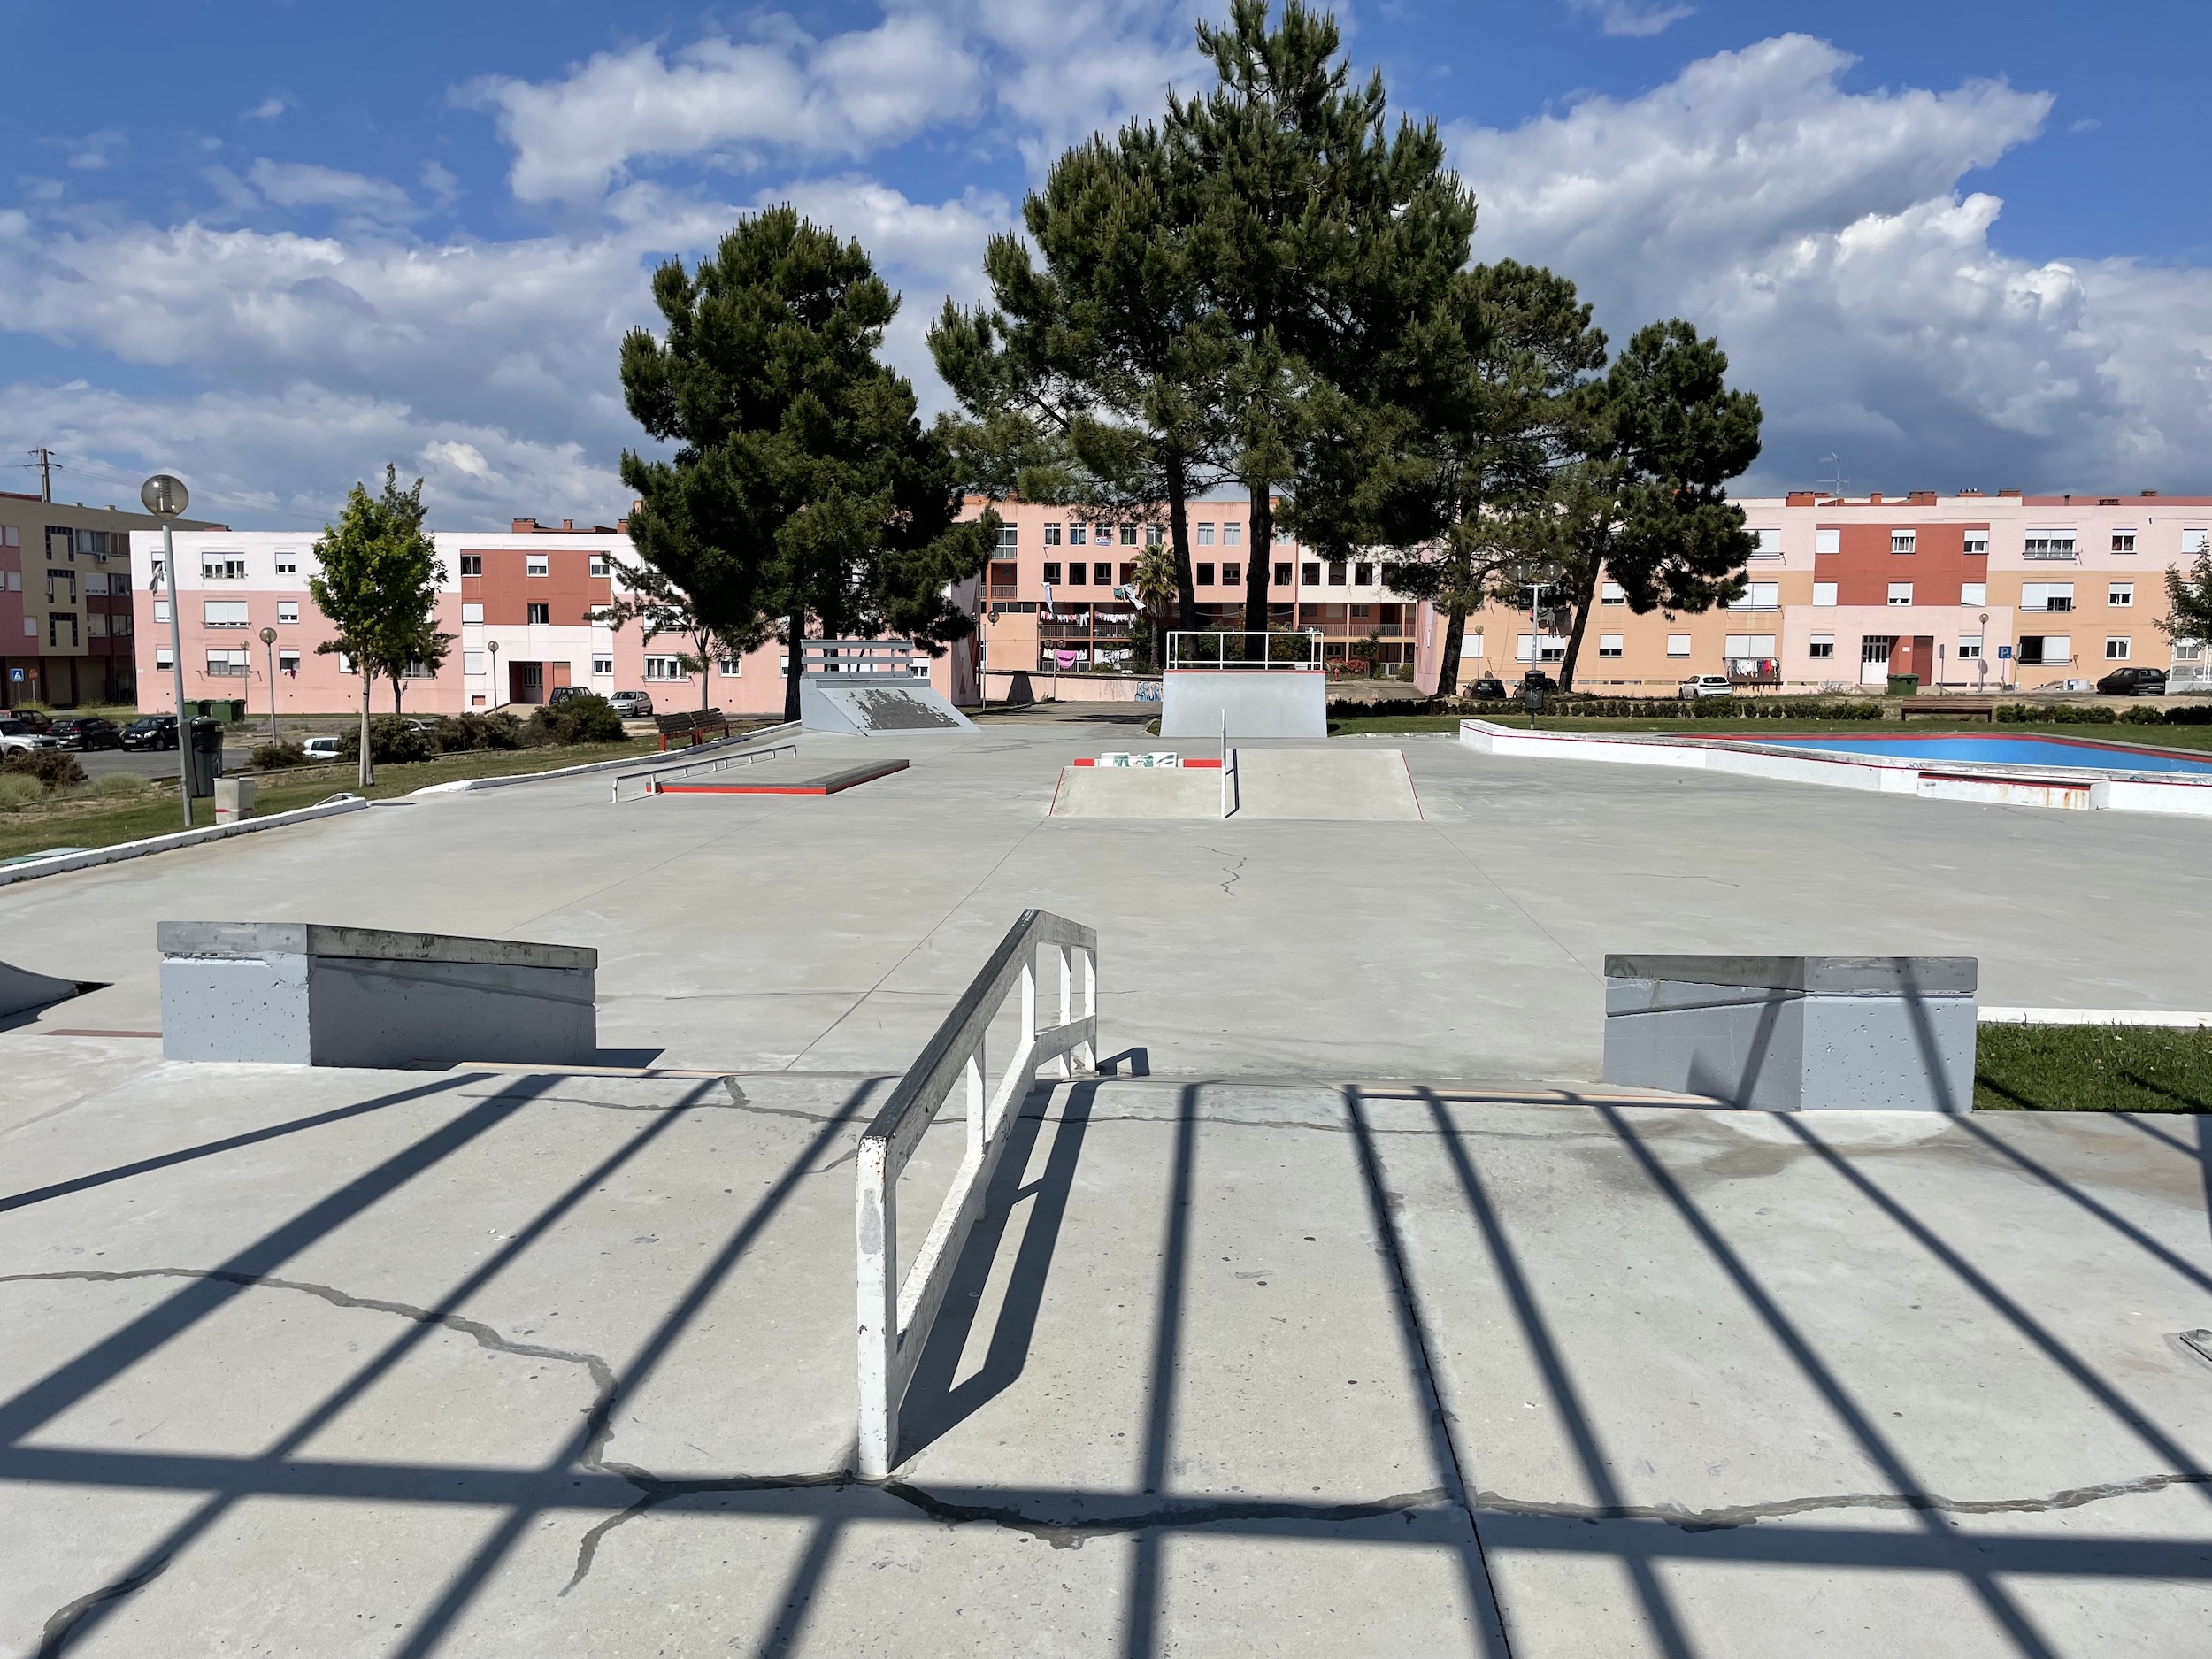 Santo André Skate Plaza